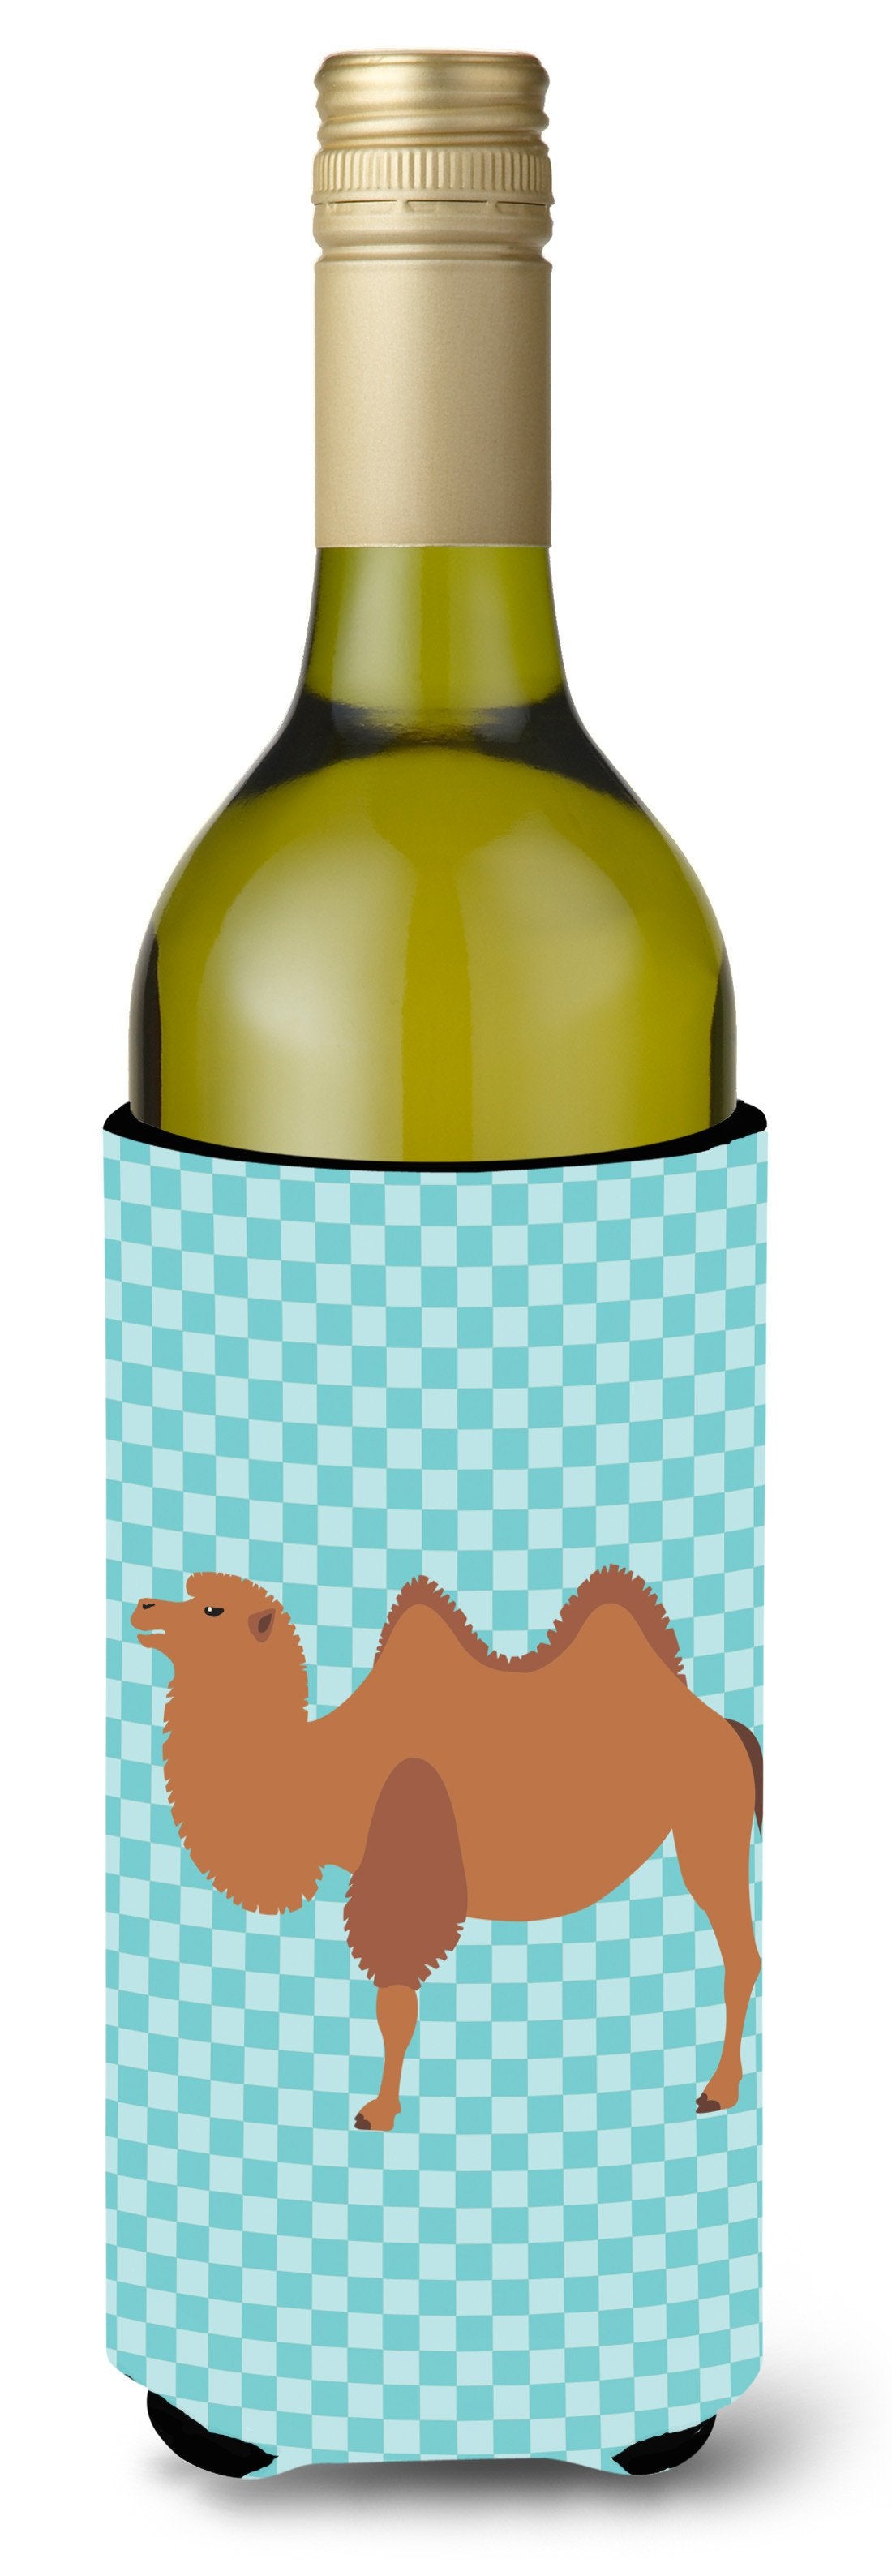 Bactrian Camel Blue Check Wine Bottle Beverge Insulator Hugger BB7992LITERK by Caroline's Treasures